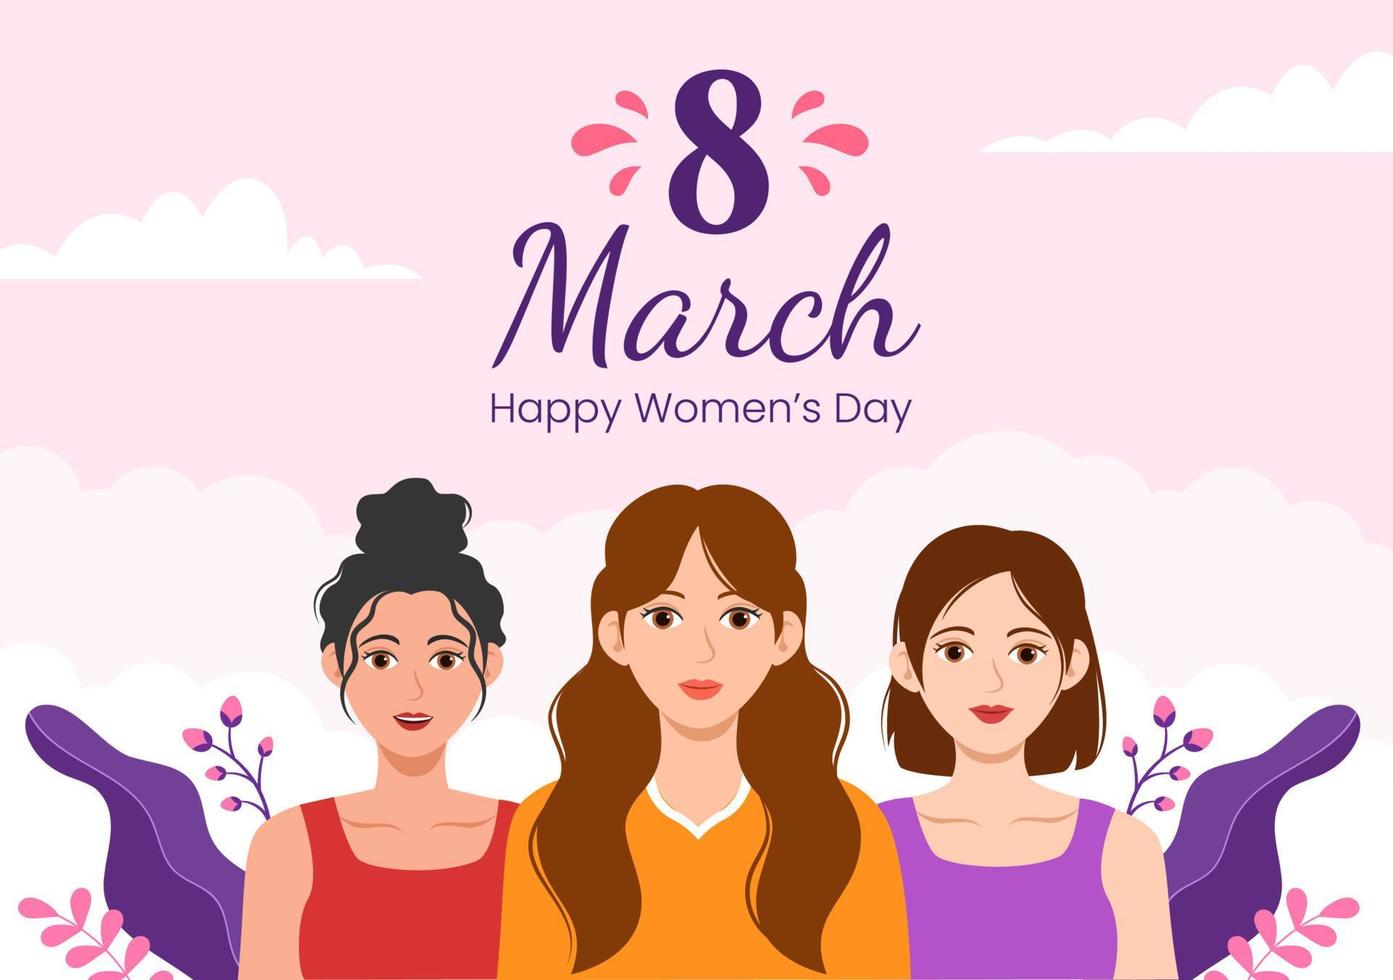 internazionale Da donna giorno su marzo 8 illustrazione per celebrare il realizzazioni di donne nel piatto cartone animato mano disegnato atterraggio pagina modelli vettore